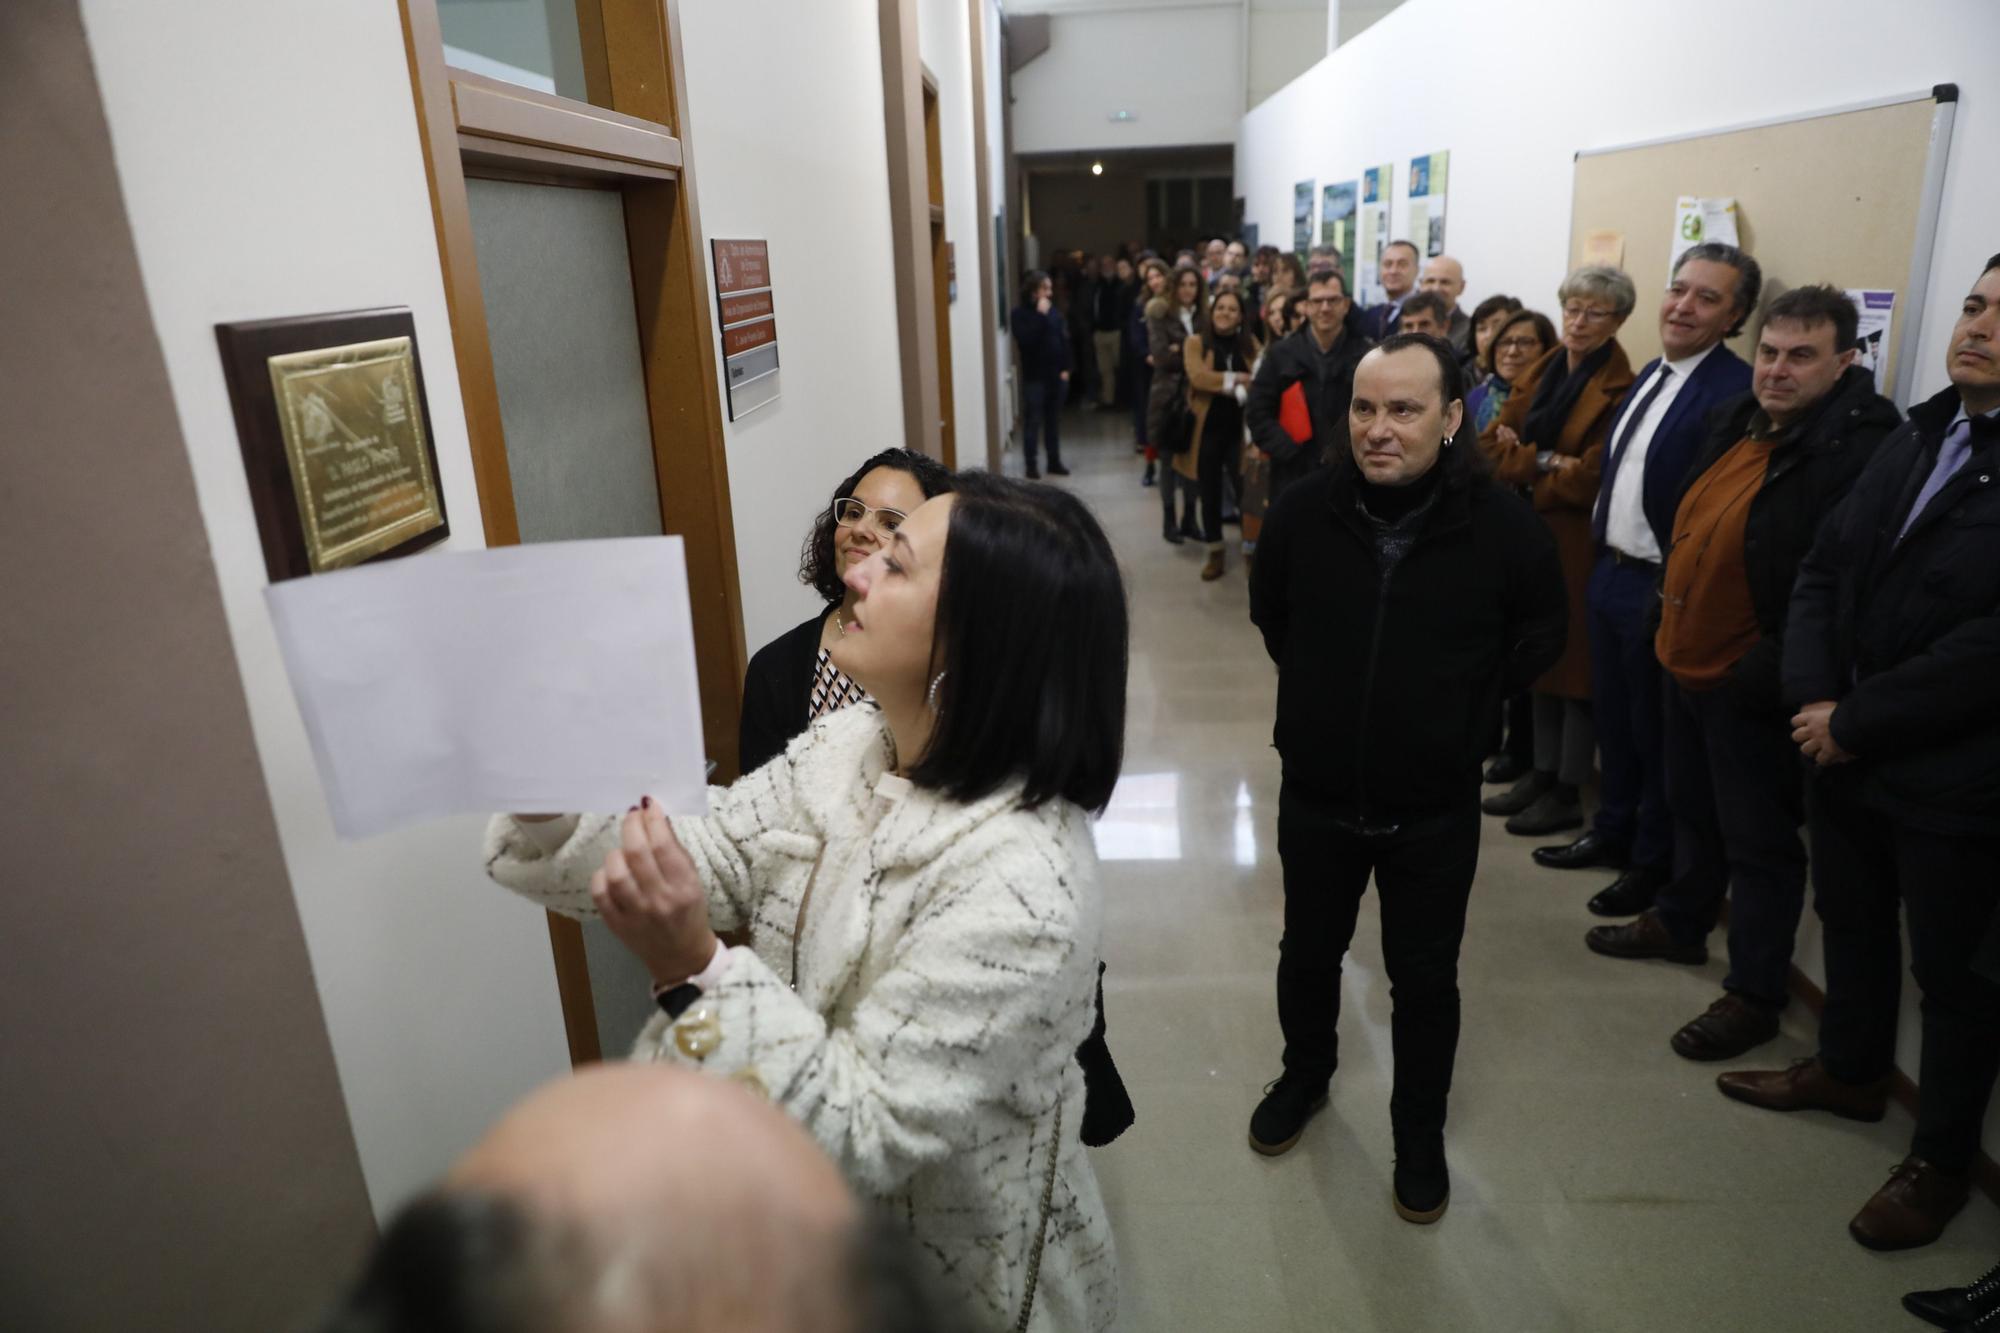 En imágenes: Homenaje al catedrático Paolo Priore en la Escuela Politécnica de Ingeniería de Gijón